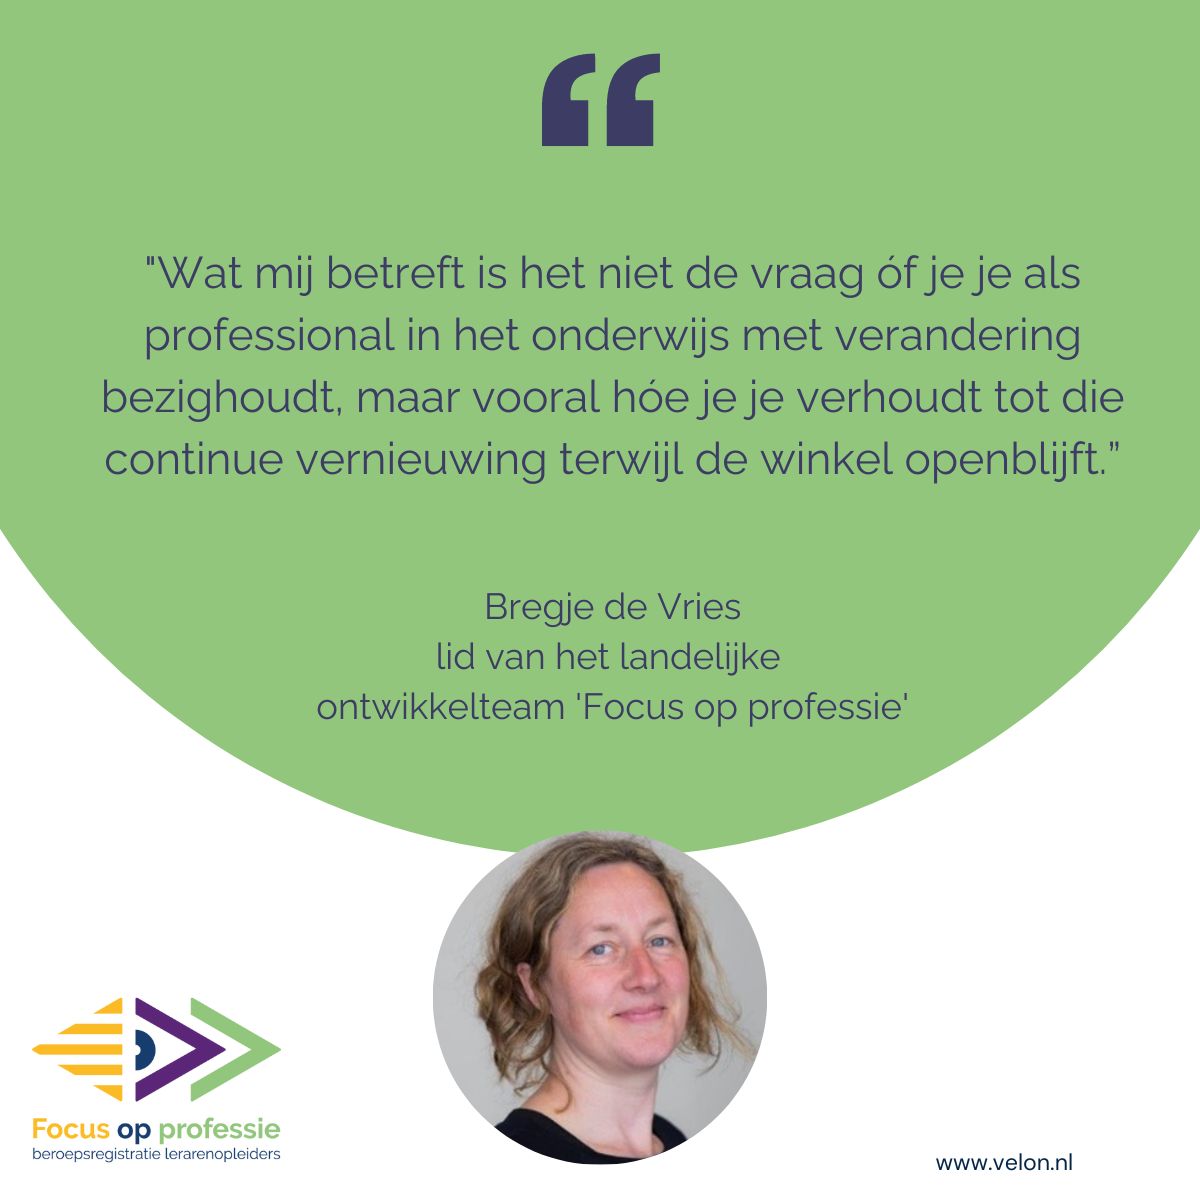 Ontwikkelteam Focus op professie: Bregje de Vries